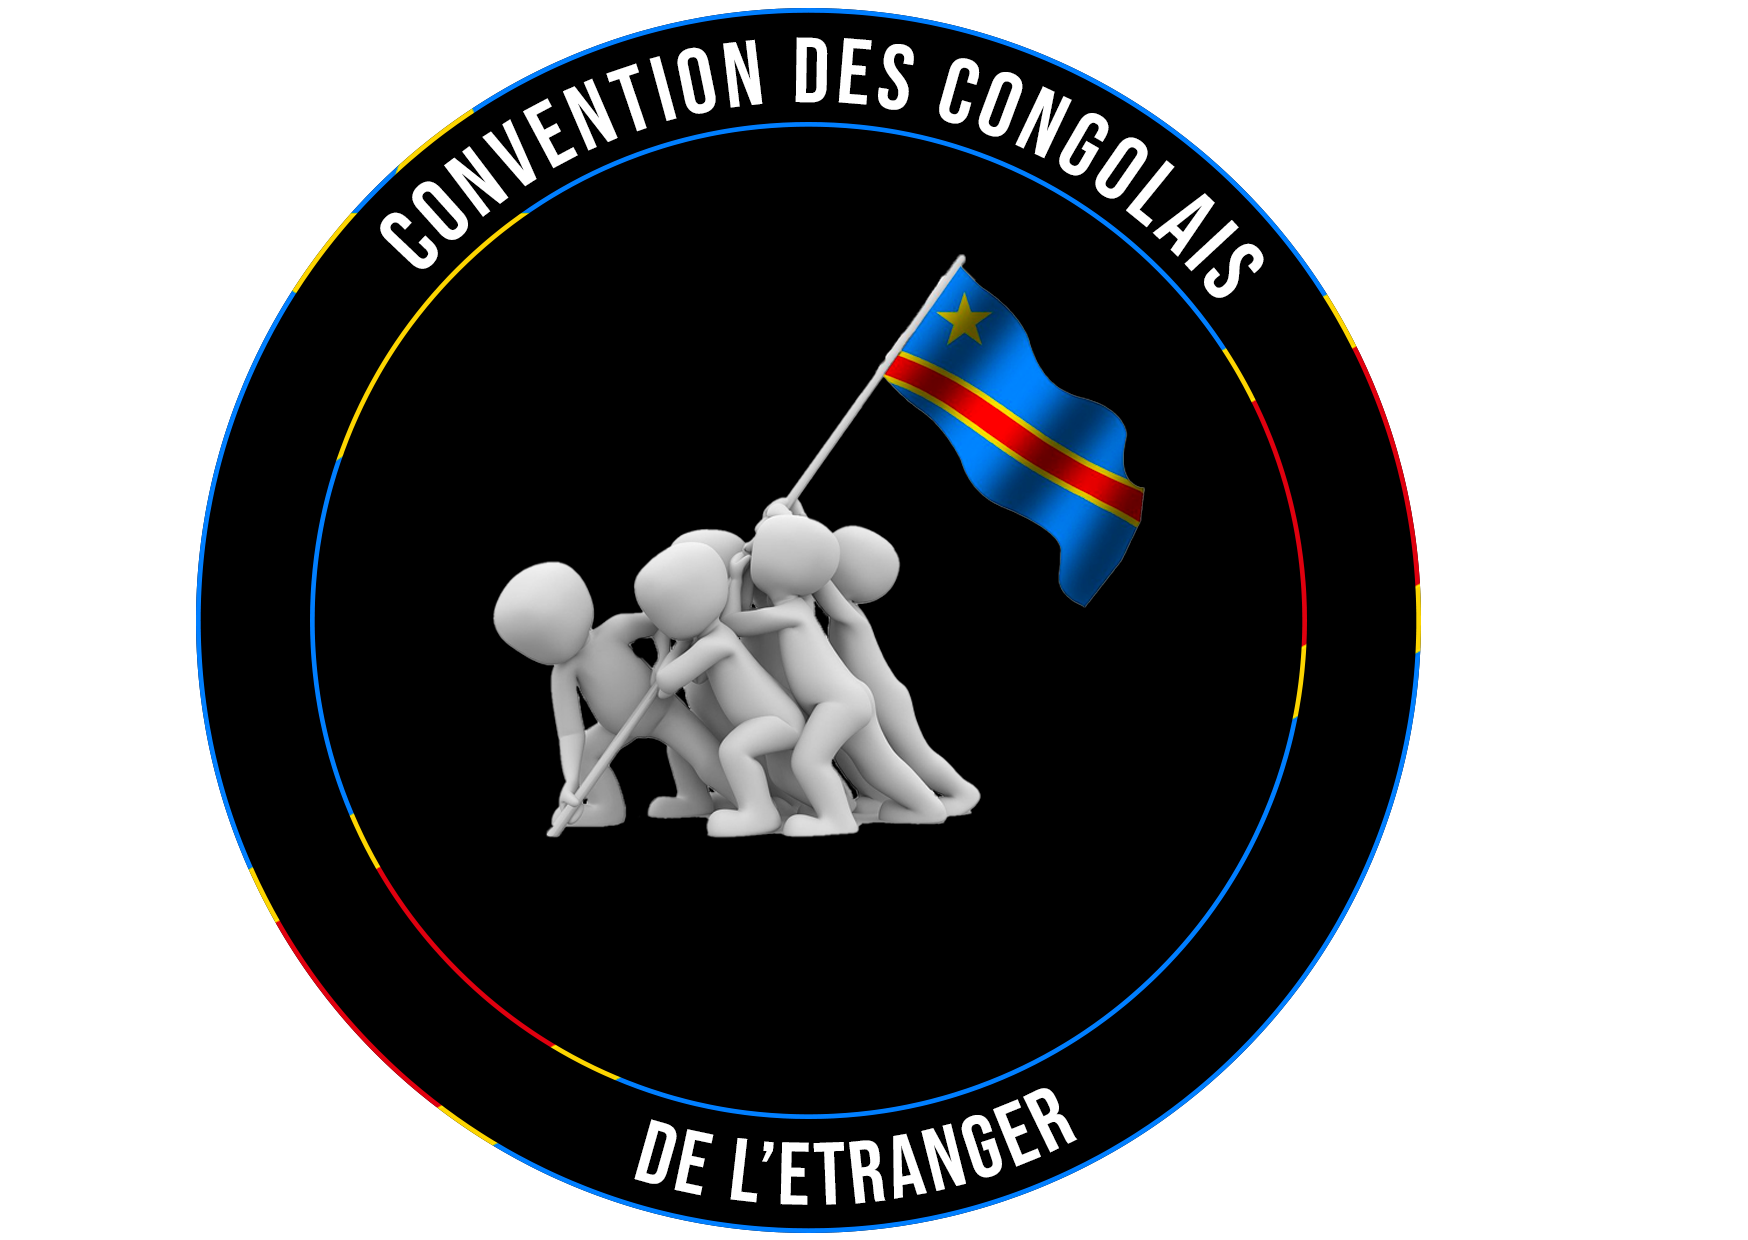 CCE Convention des Congolais de l’Etranger